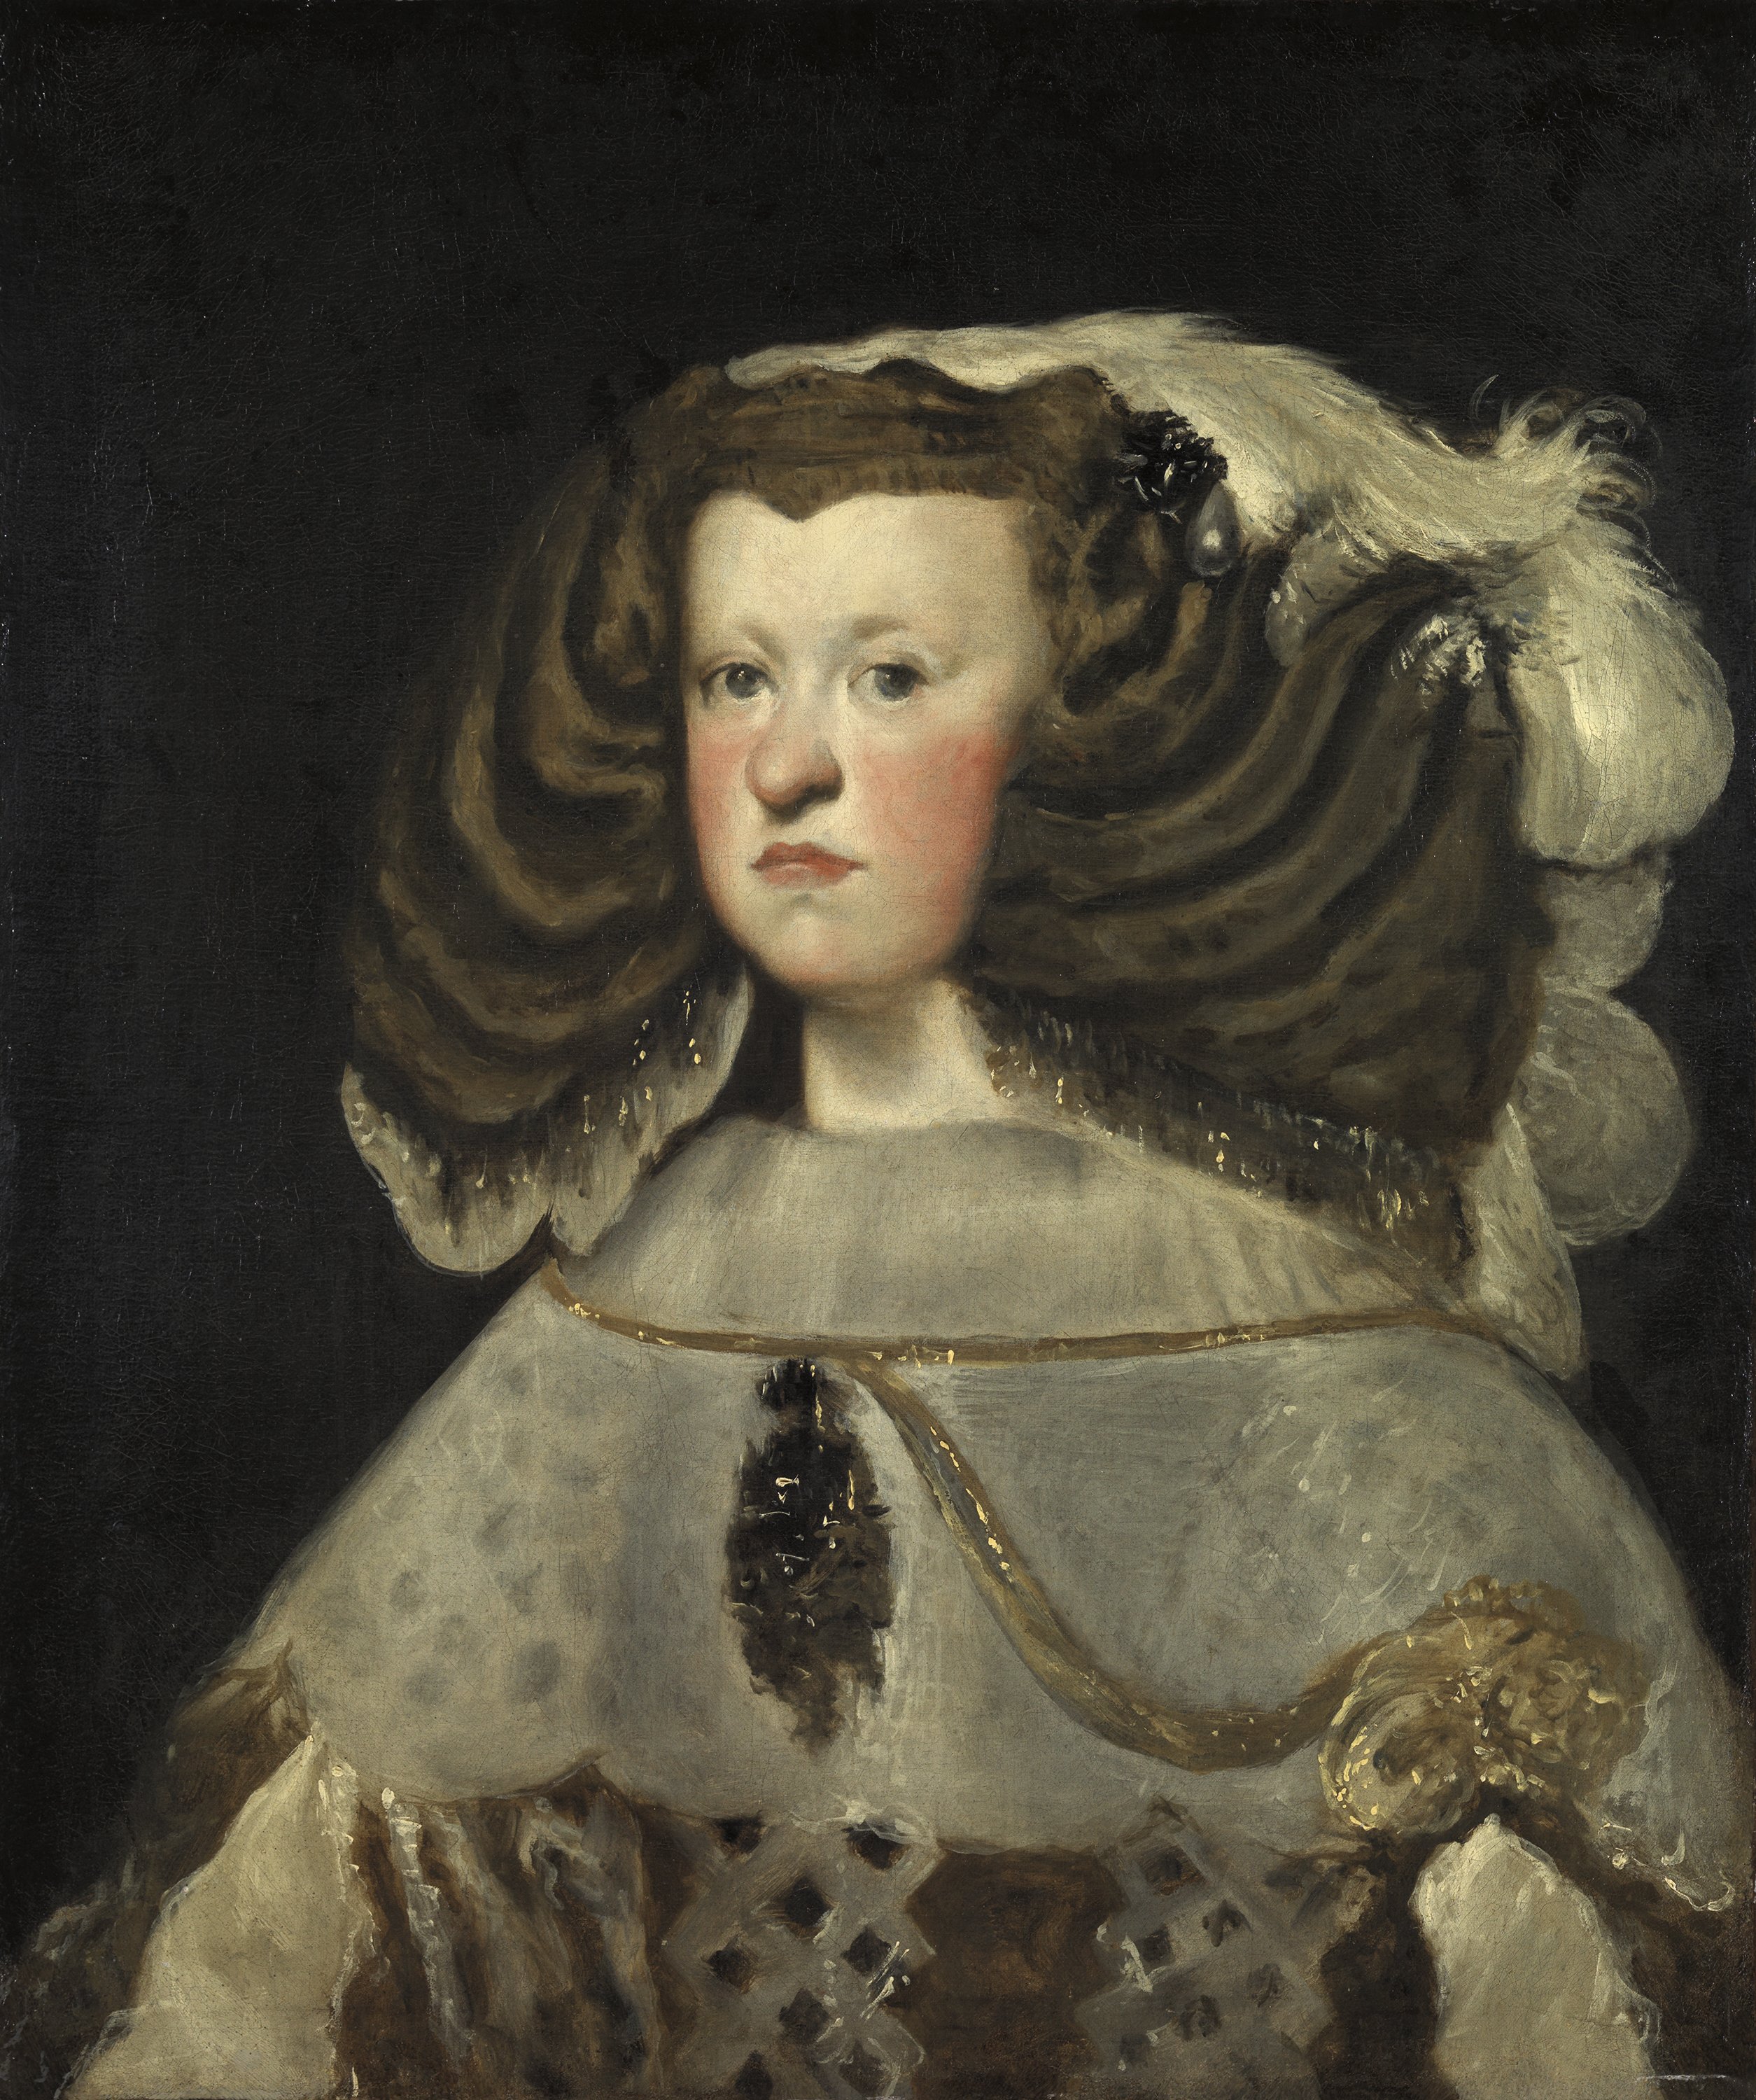 Portrait of Mariana of Austria, Queen of Spain. Retrato de doña Mariana de Austria, reina de España, 1655-1657